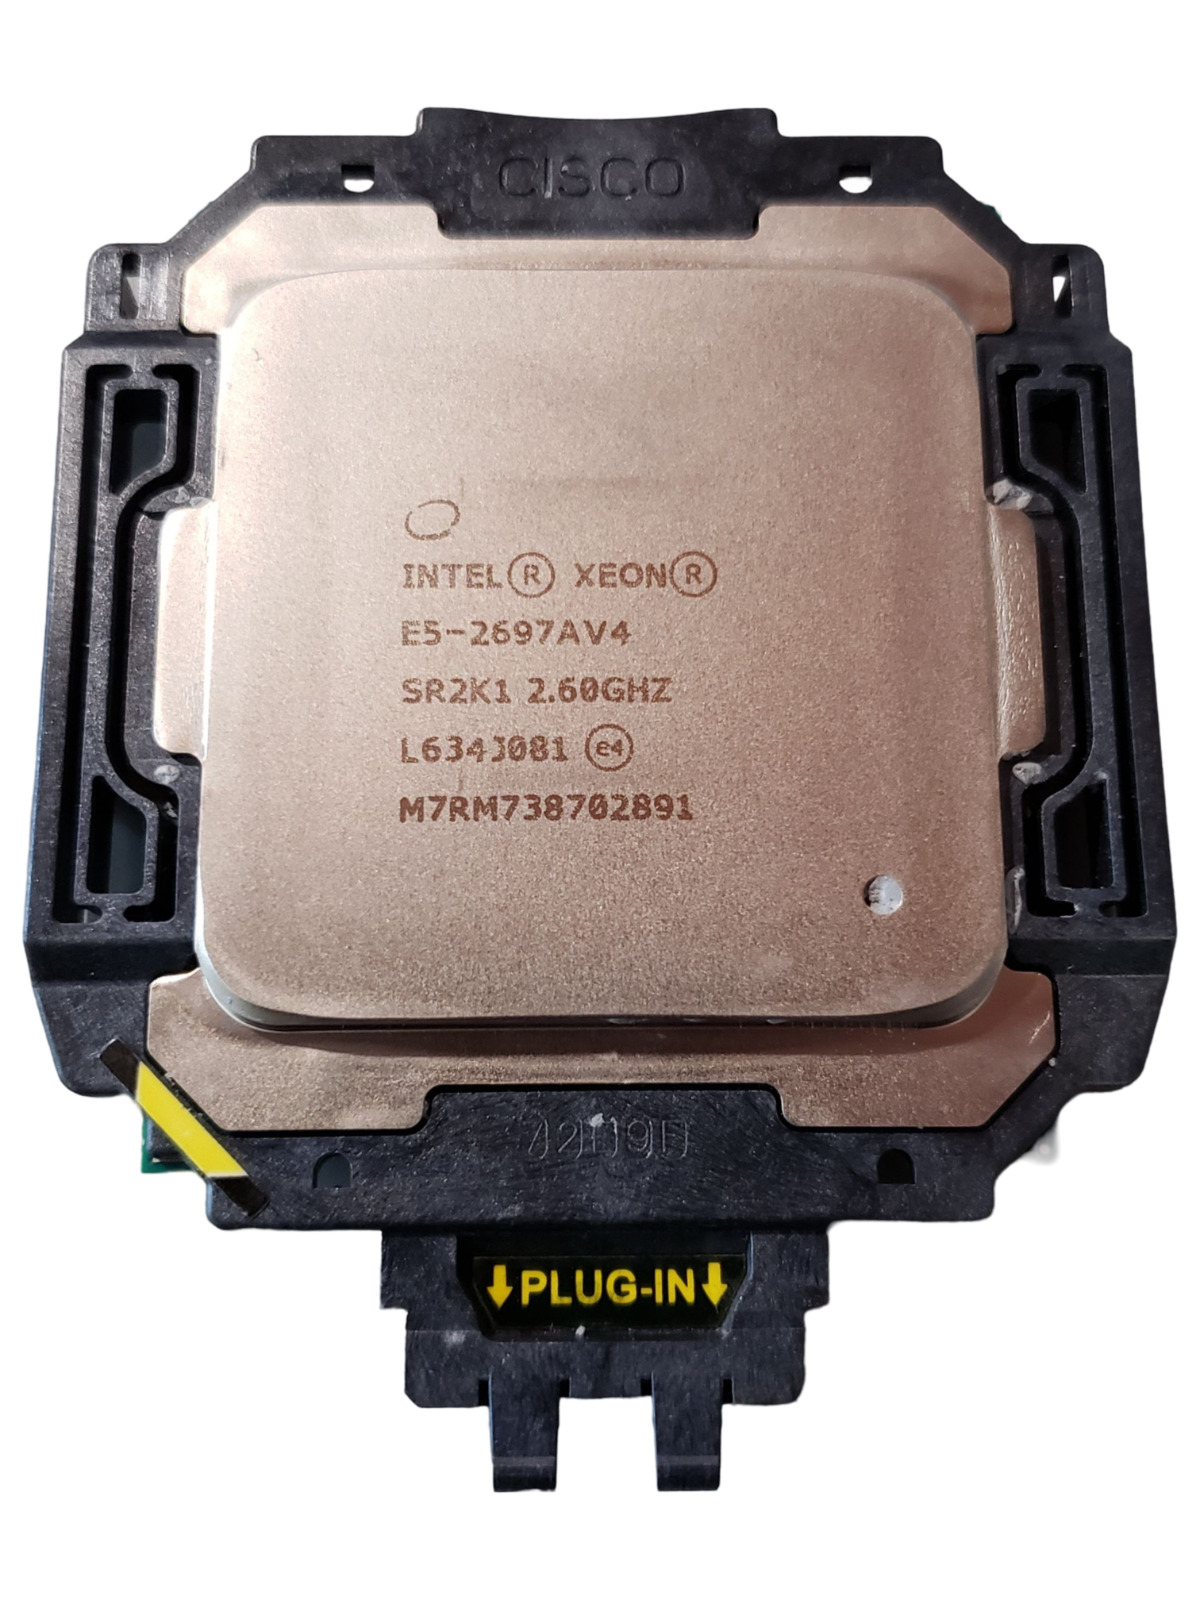 Intel Xeon E5-2697AV4 2.6GHz 16 Core FCLGA2011 Server Processor